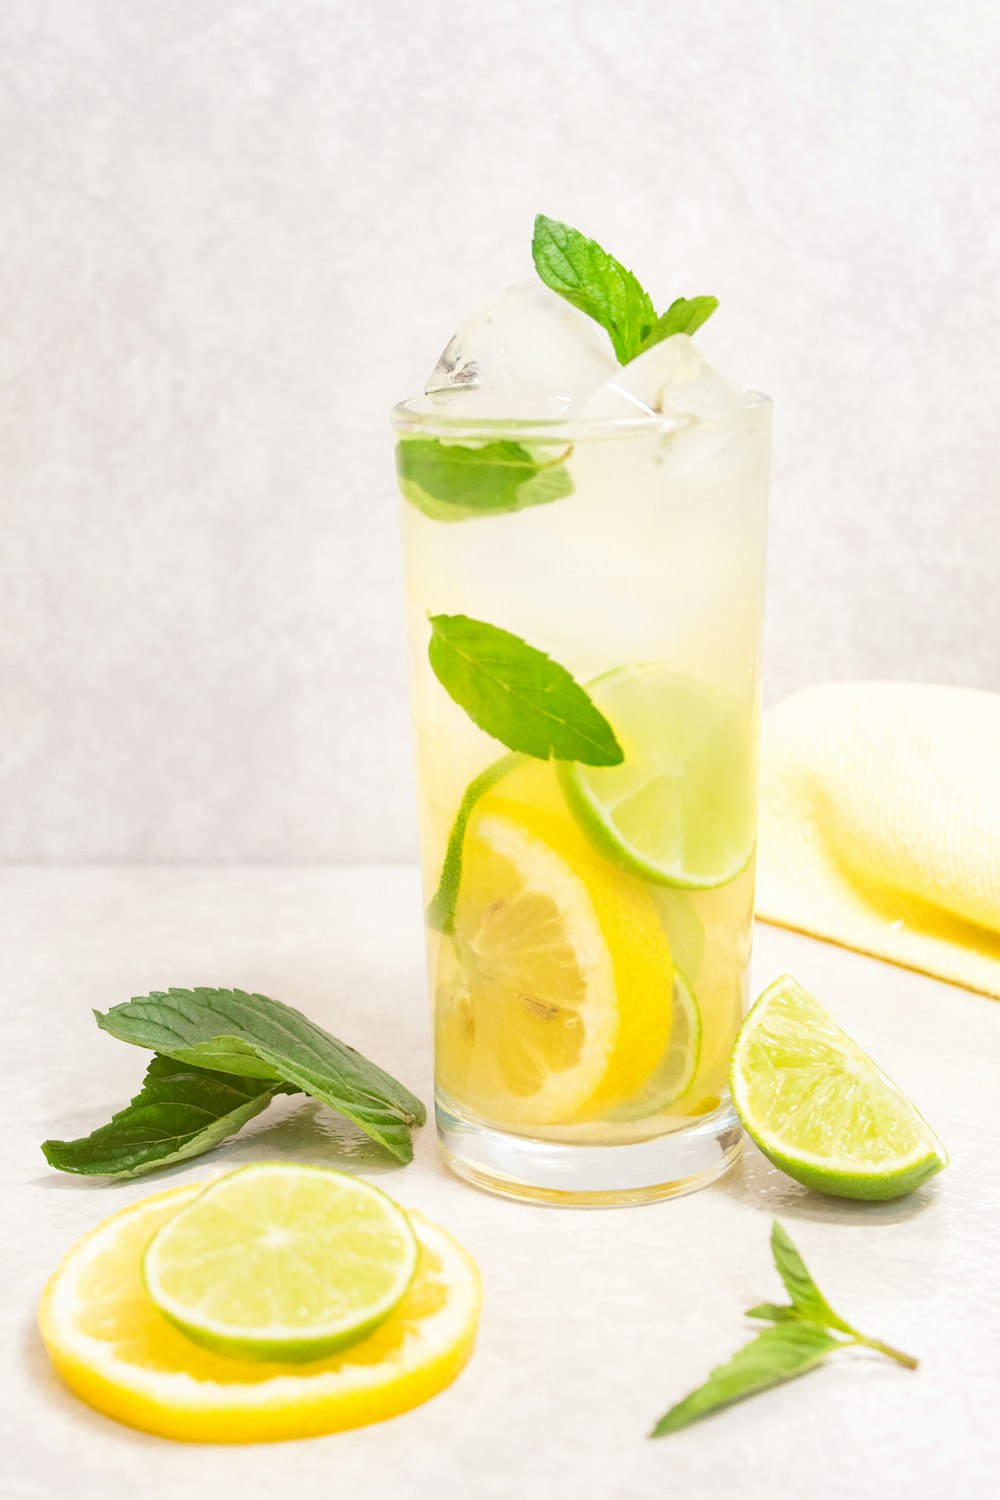 Vaso transparente con jugo de limón